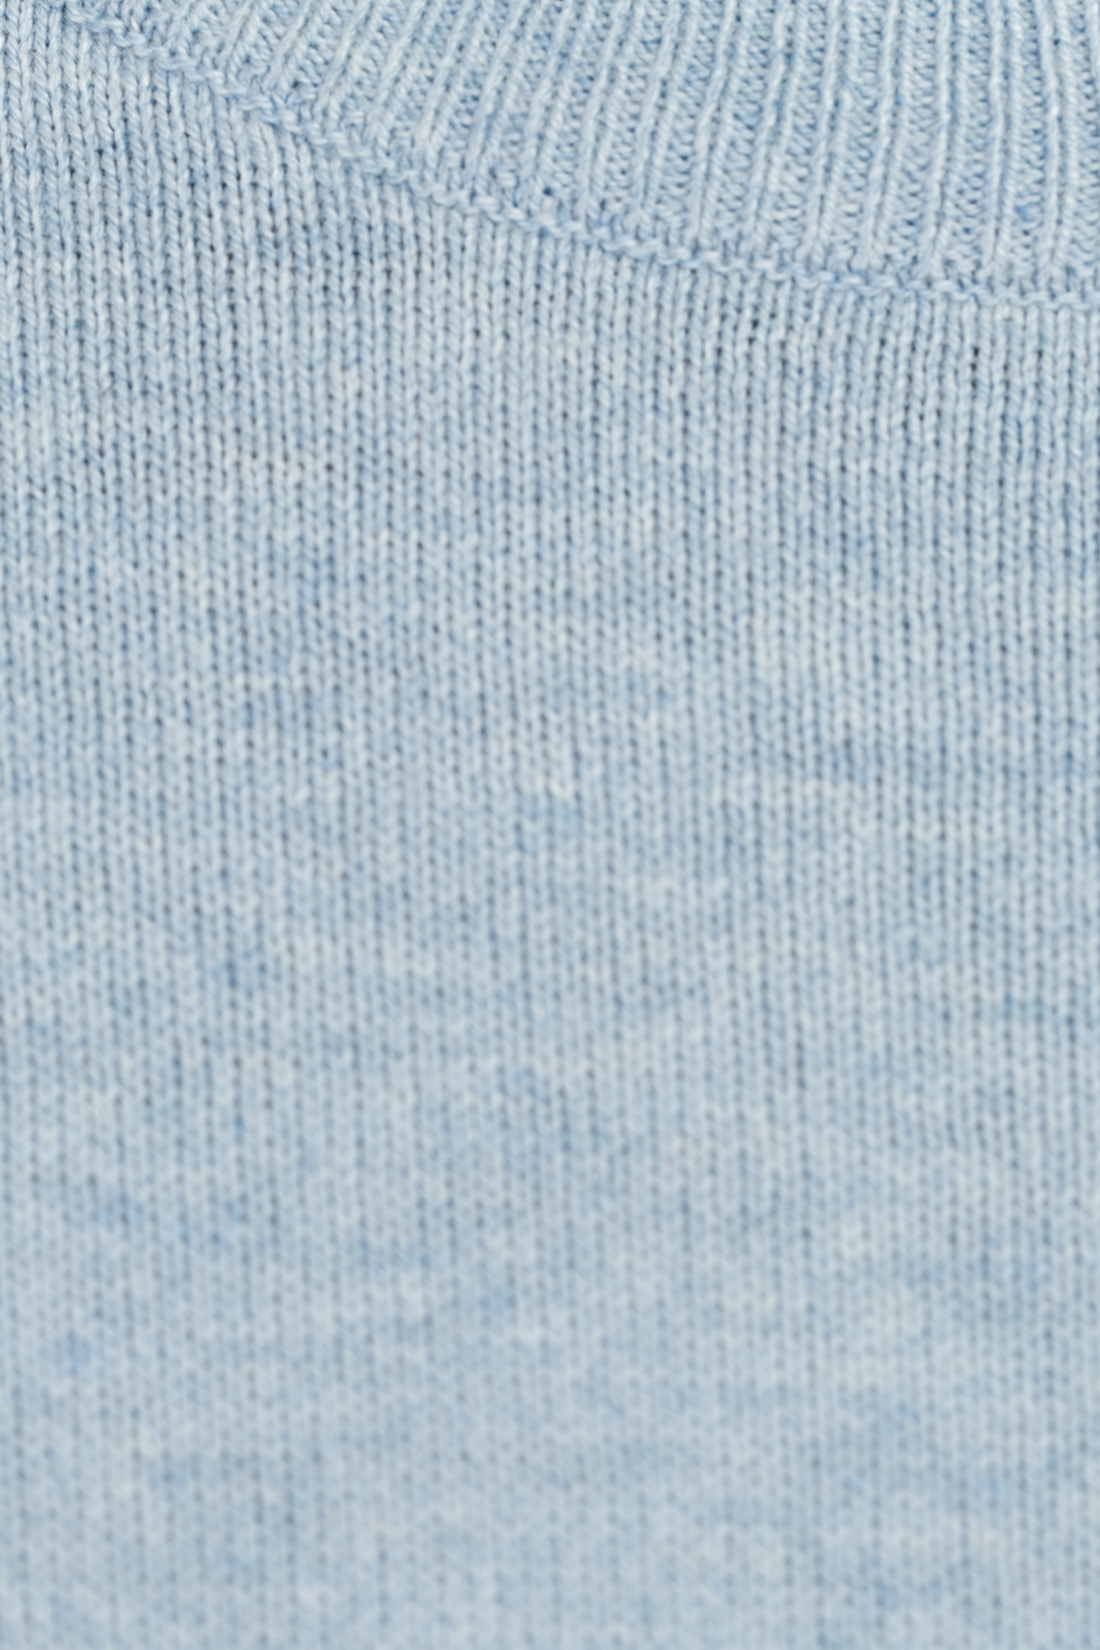 Джемпер с накладками на локтях (арт. baon B637008), размер XL, цвет белый Джемпер с накладками на локтях (арт. baon B637008) - фото 3